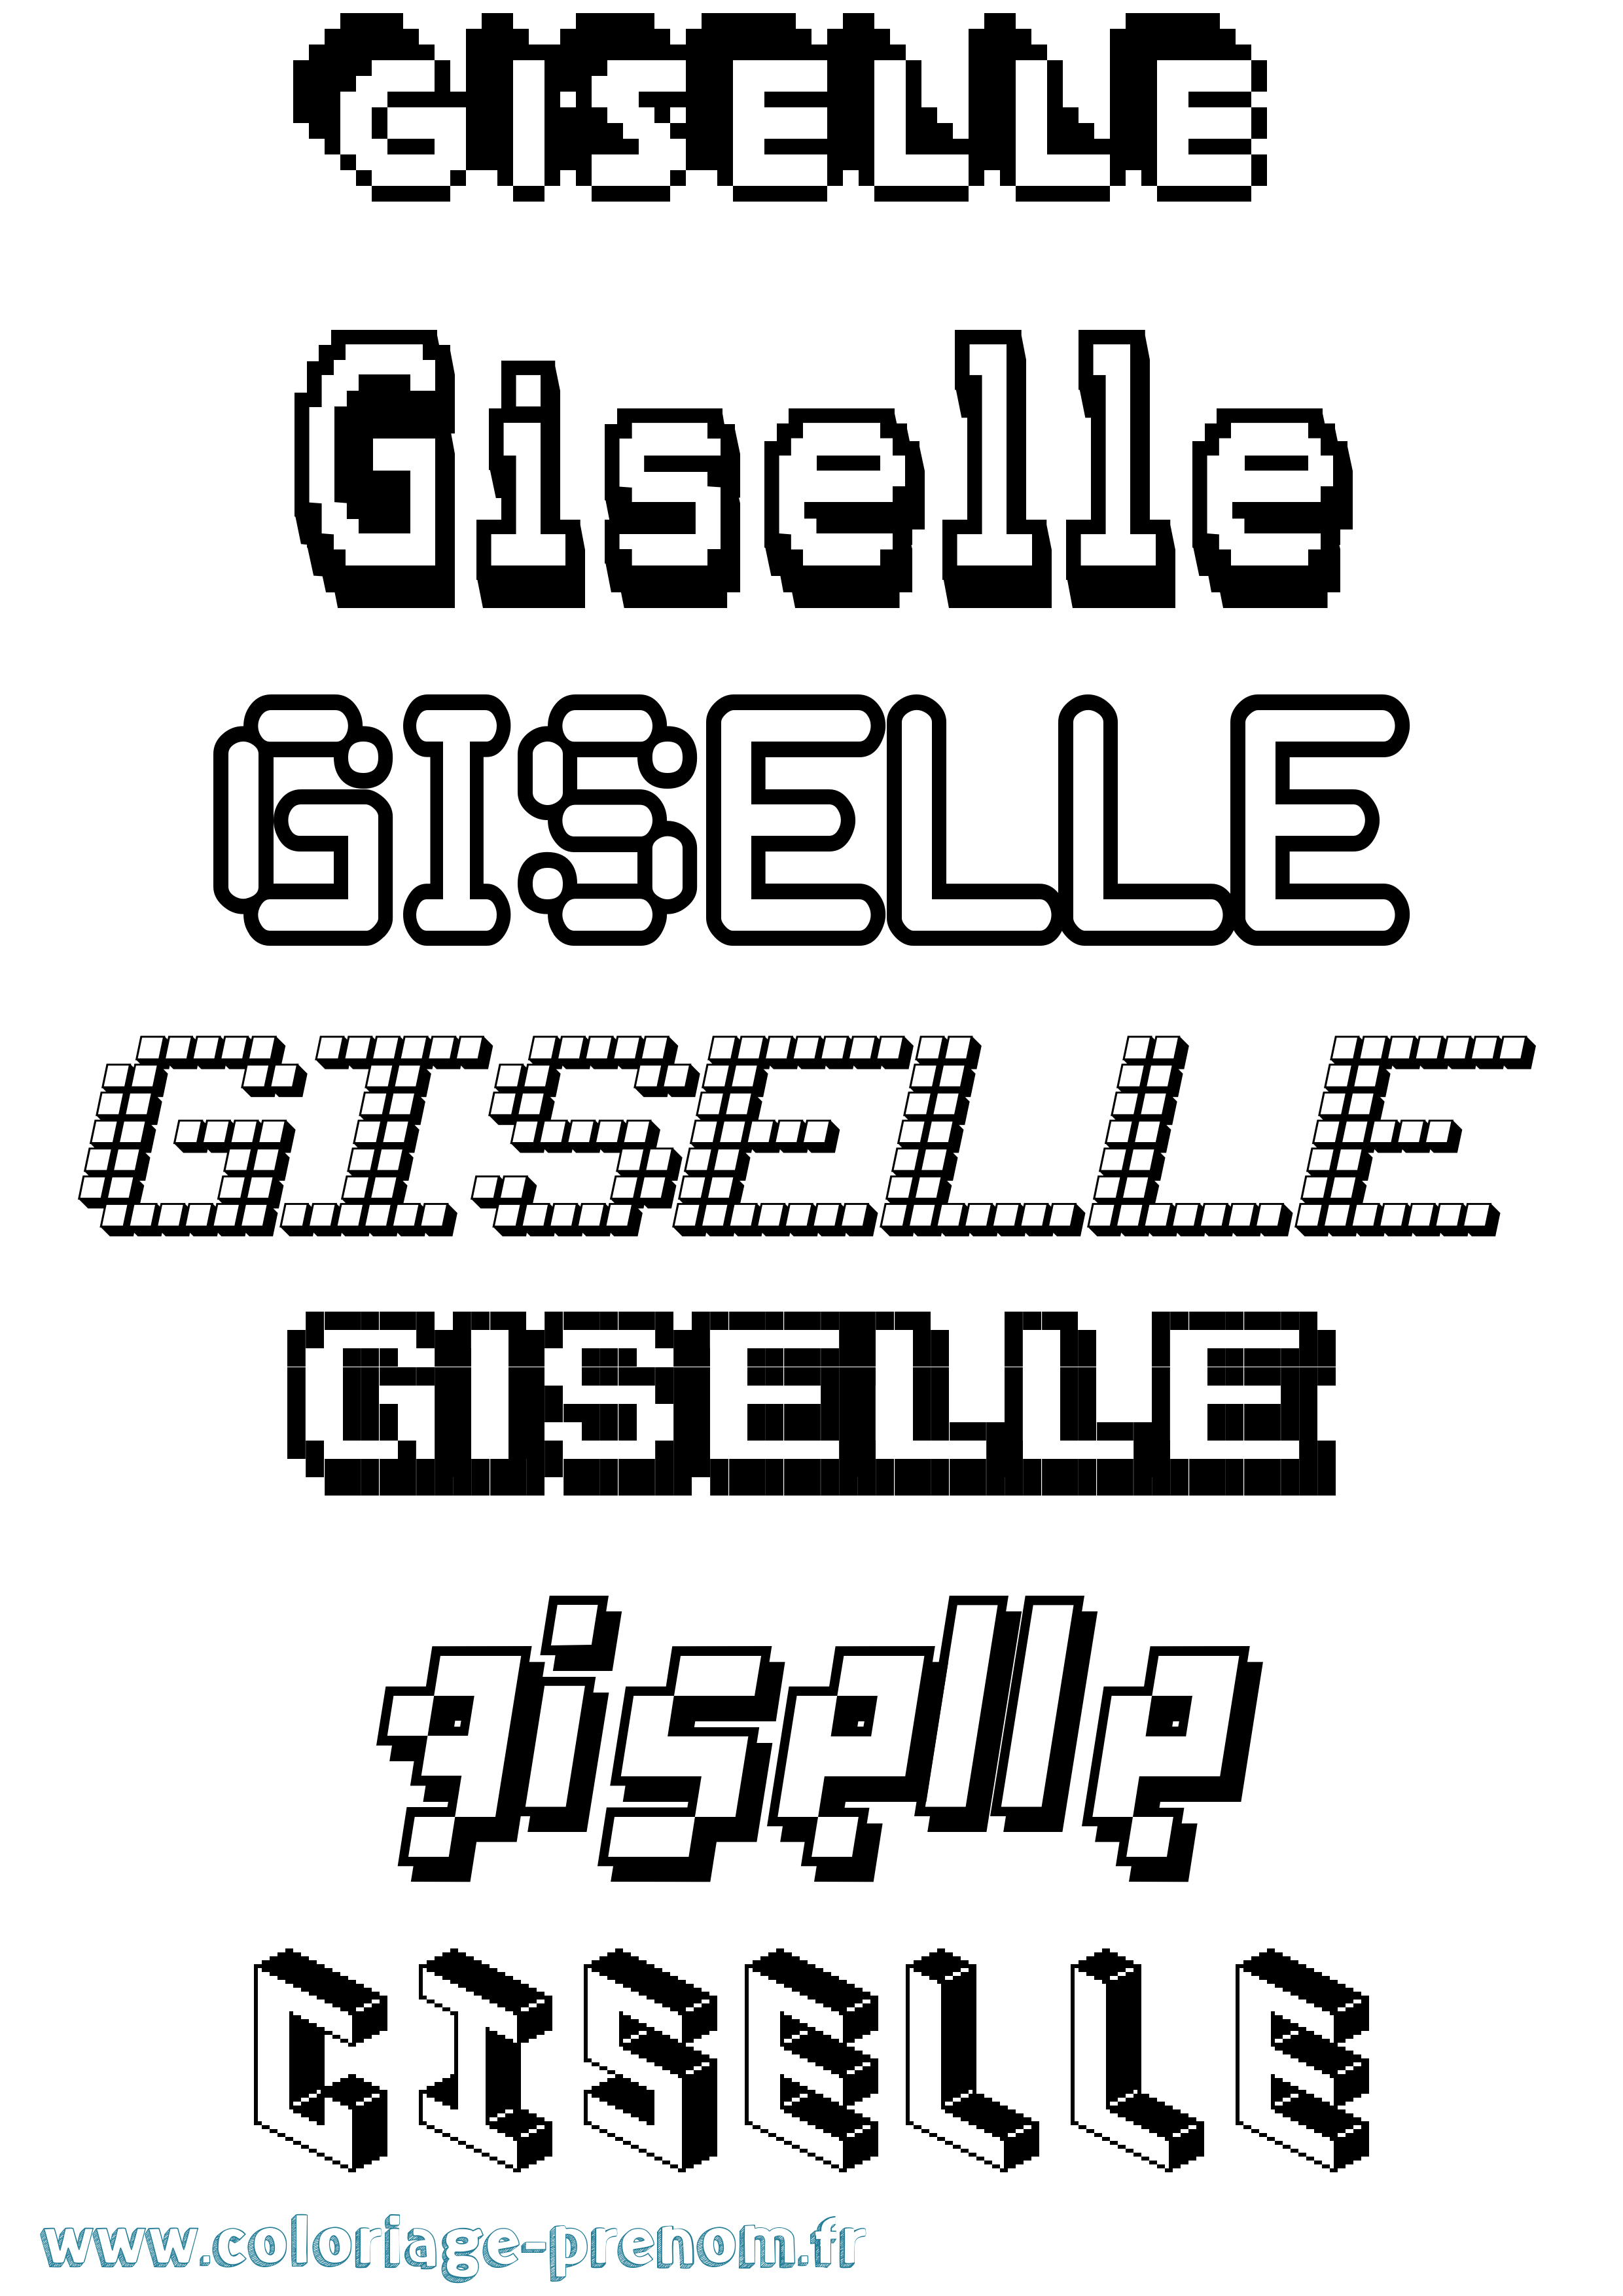 Coloriage prénom Giselle Pixel